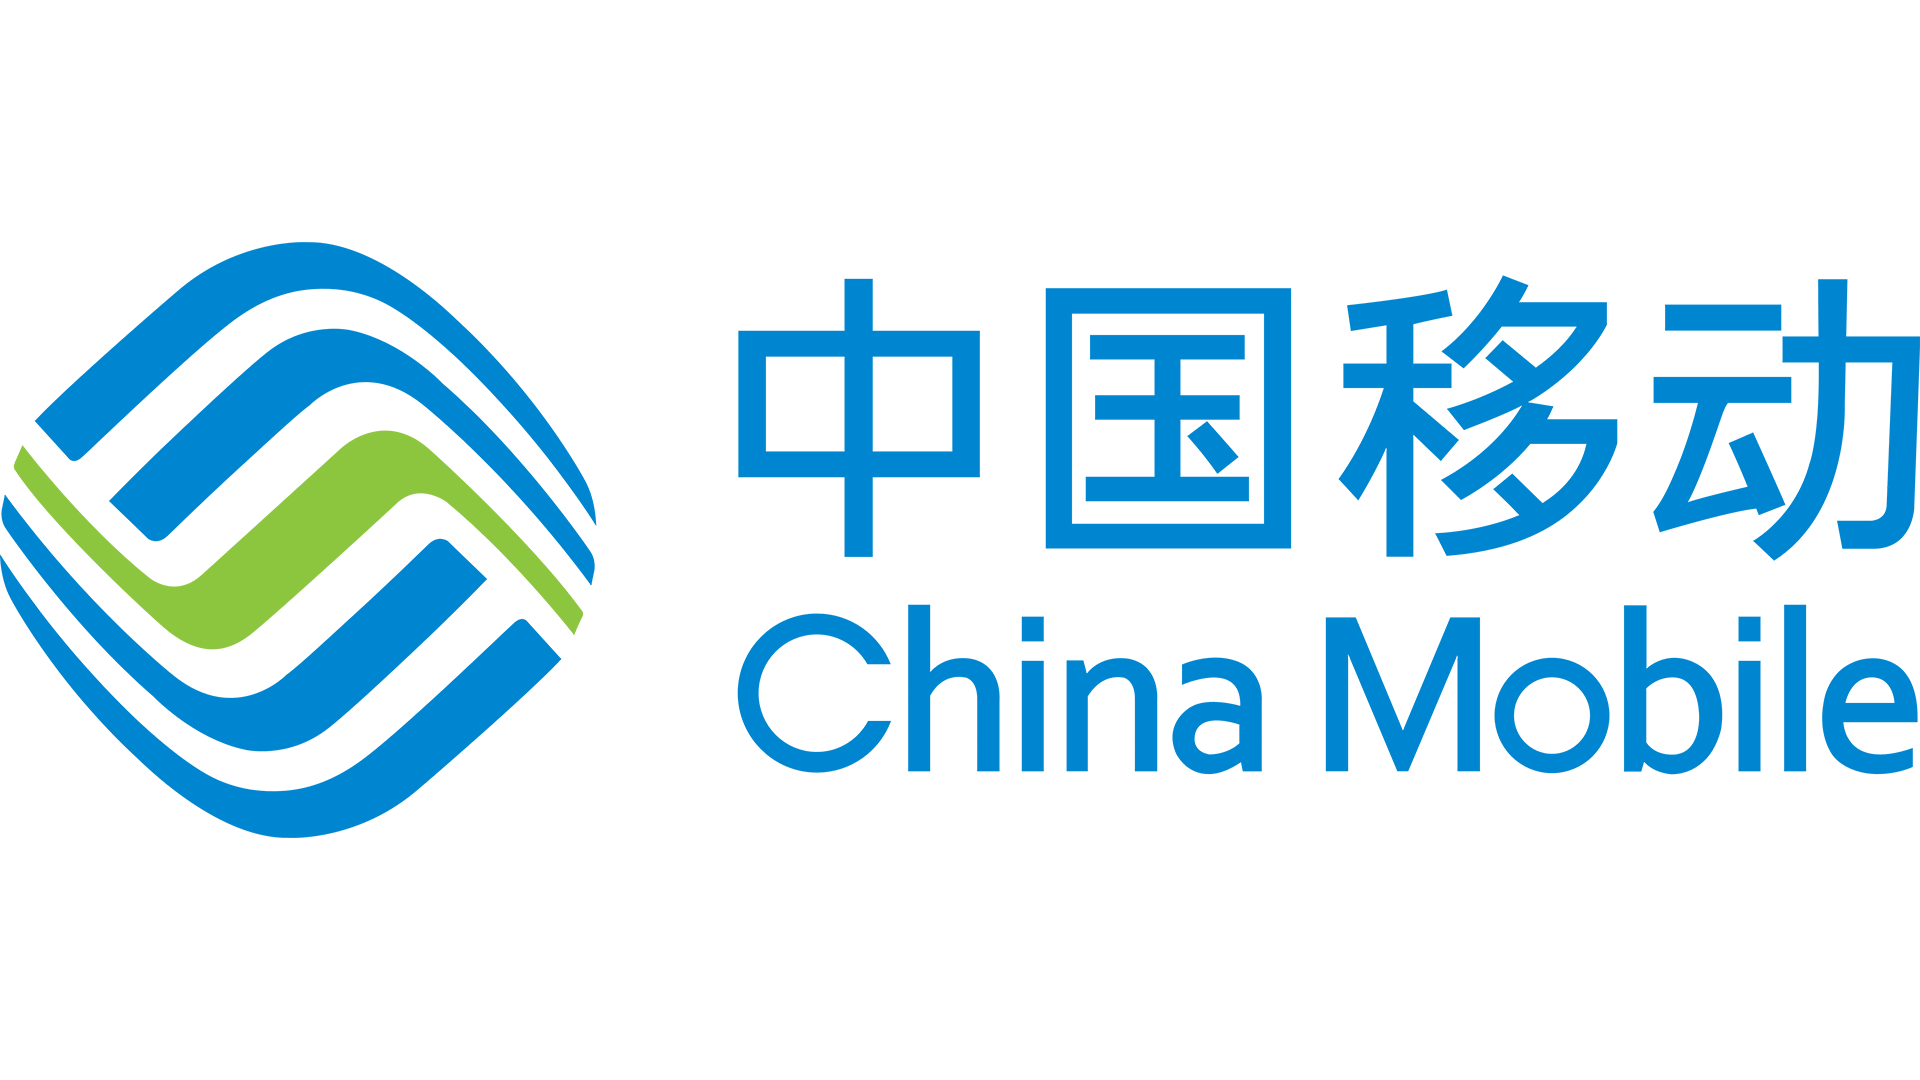 China mobile